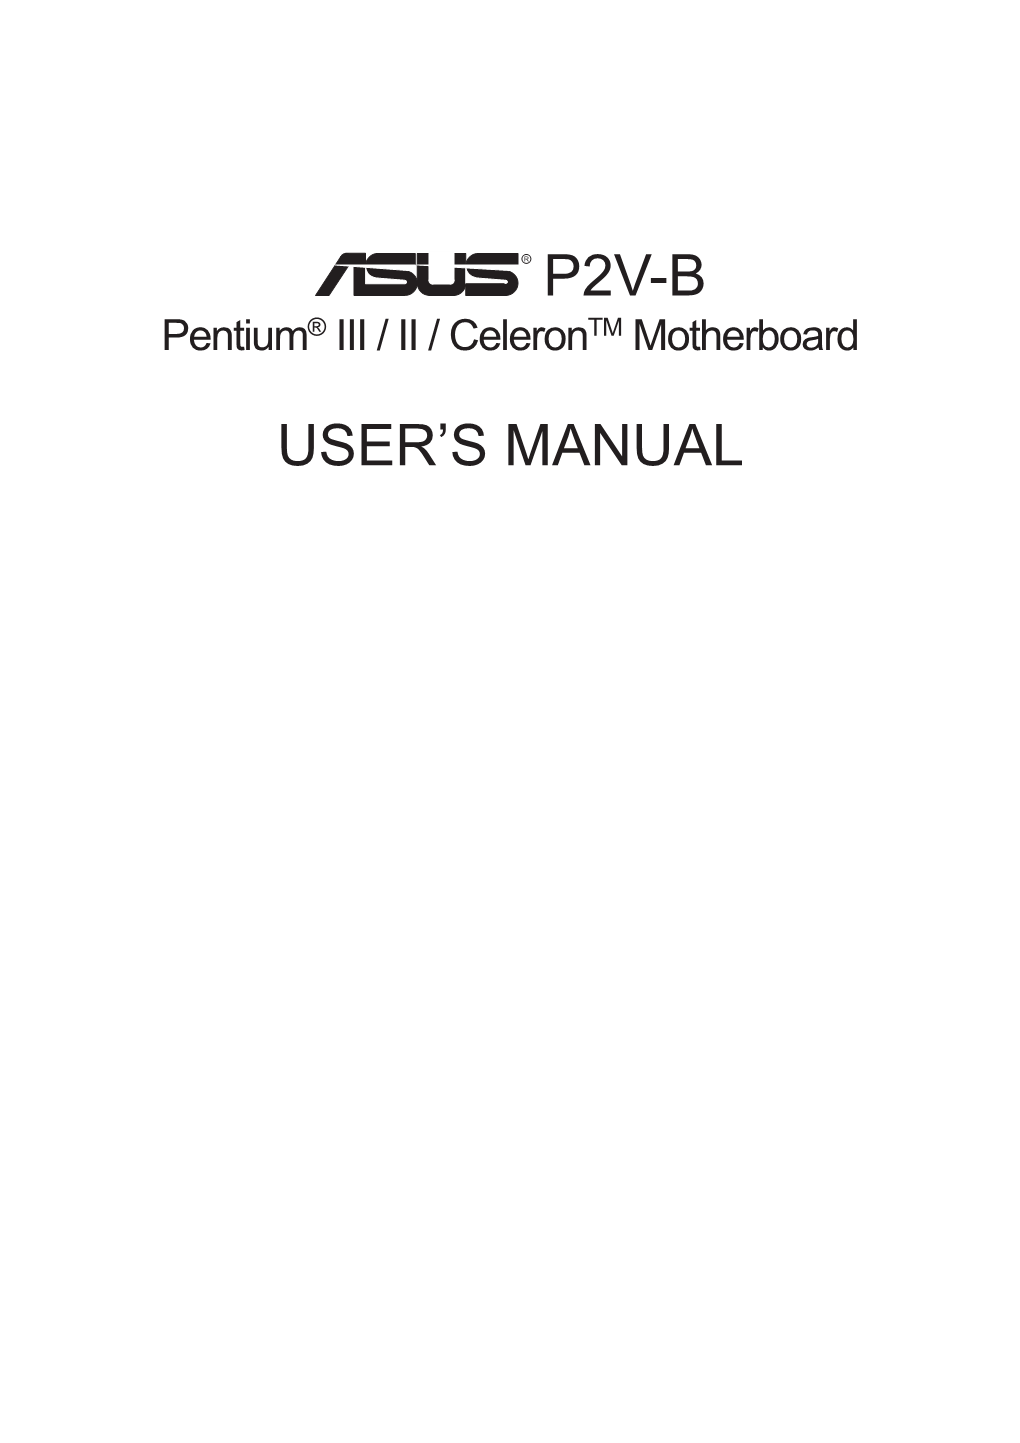 P2v-B User's Manual